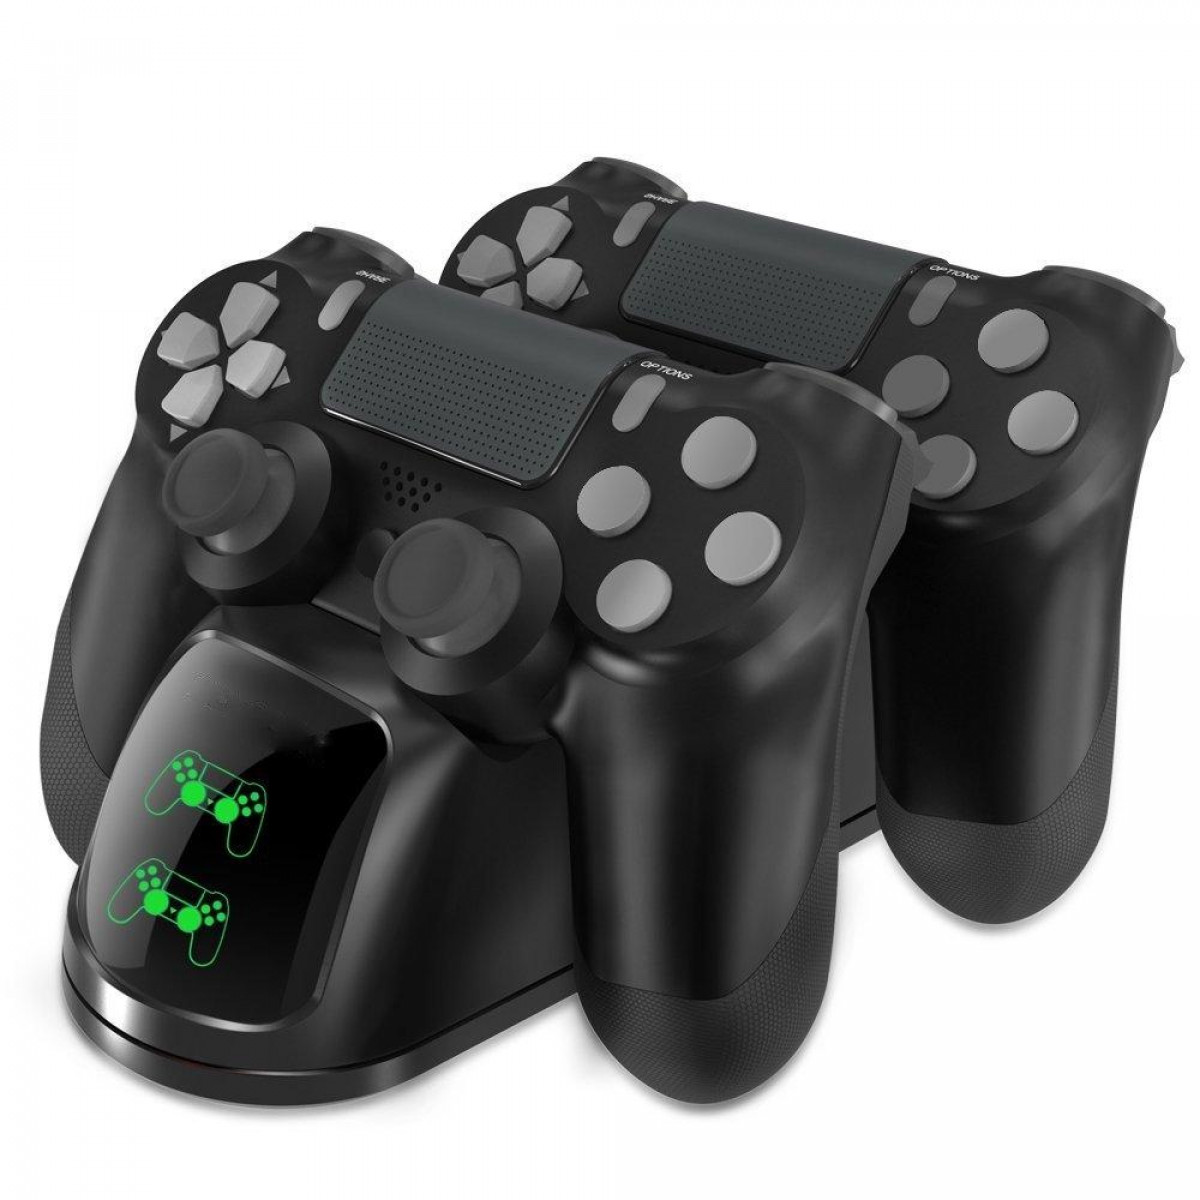 INF Doppel-Ladegerät für schwarz zwei Slim/PS4 Controller PS4/PS4 Doppel-Ladegerät Pro zwei